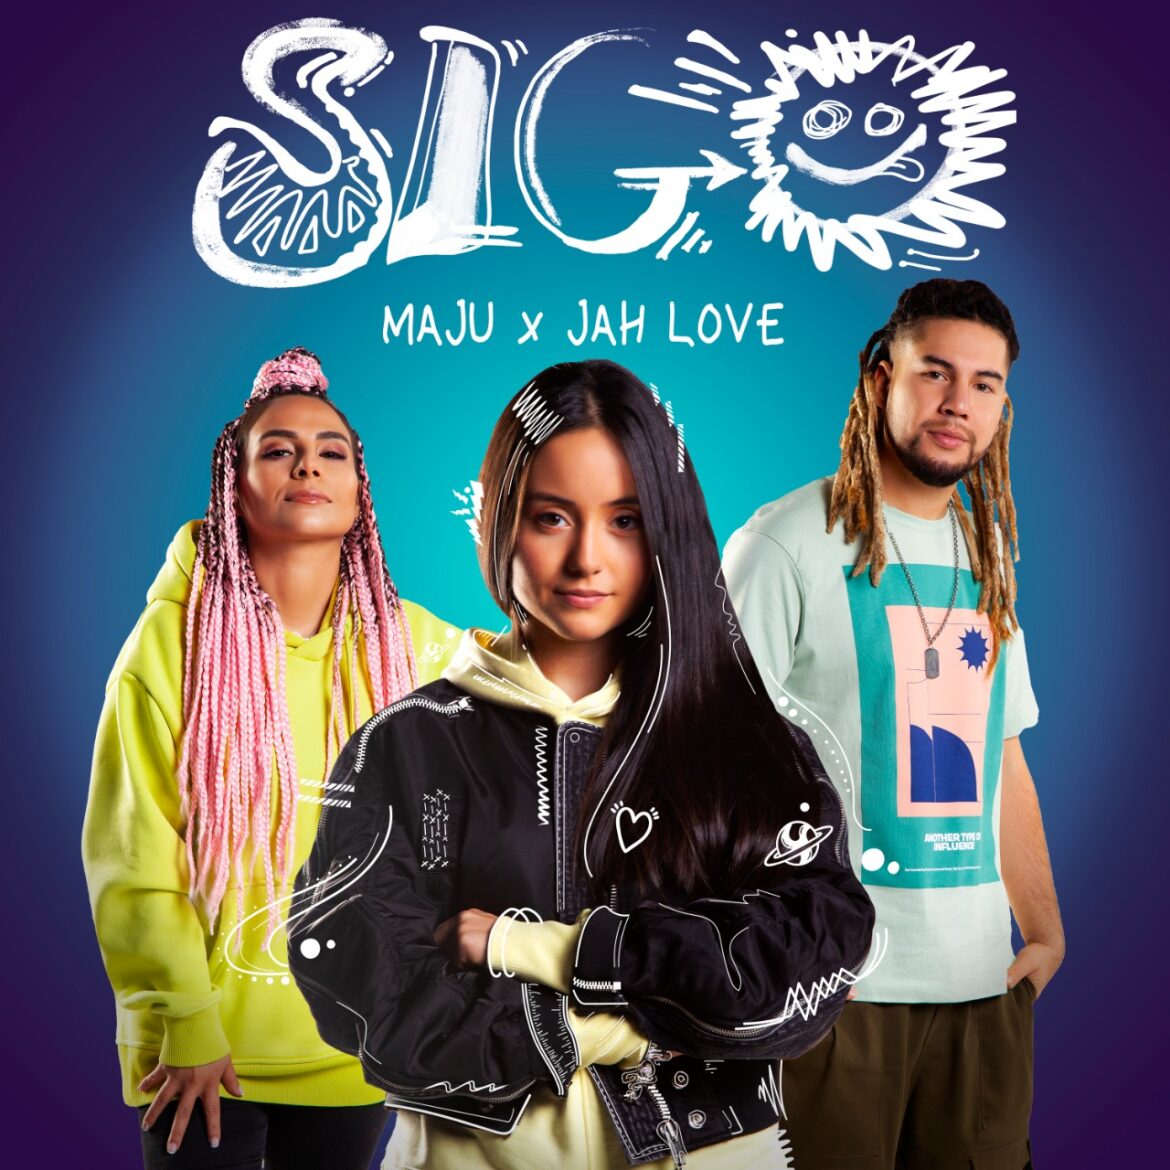 La joven y talentosa cantante colombiana Maju presenta “Sigo” junto a sus amigos de la banda Jah Love